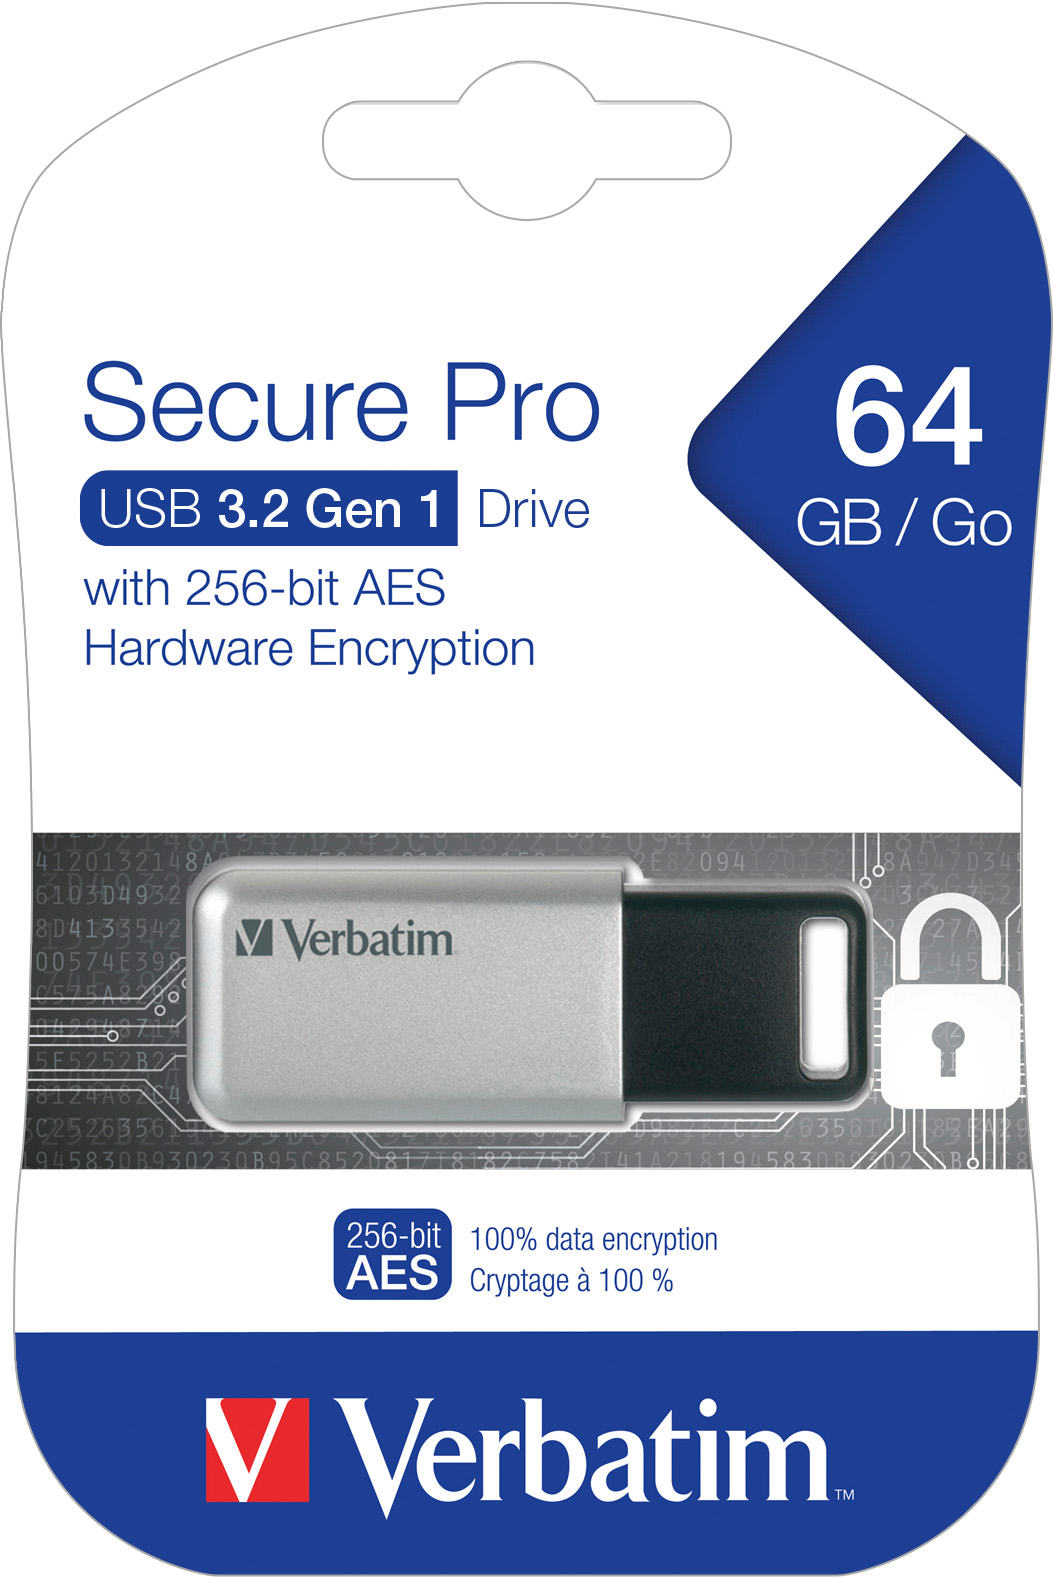 Verbatim USB 3.0 Stick 64GB, Secure Pro, Silber (R) 100MB/s, (W) 35MB/s, AES 256-Bit, Retail-Blister